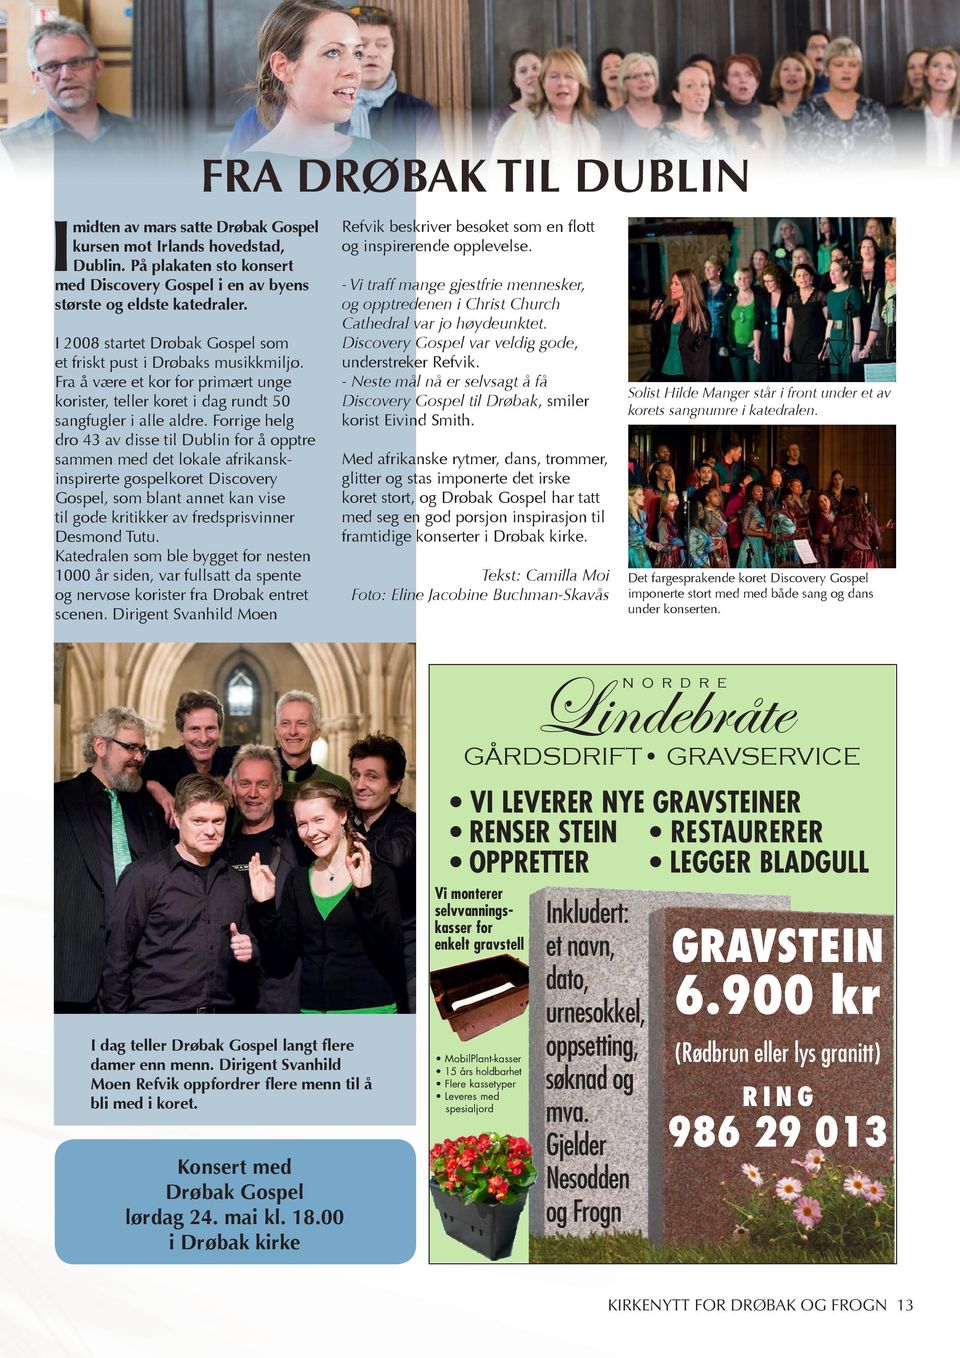 I 2008 startet Drøbak Gospel som et friskt pust i Drøbaks musikkmiljø. Fra å være et kor for primært unge korister, teller koret i dag rundt 50 sangfugler i alle aldre.